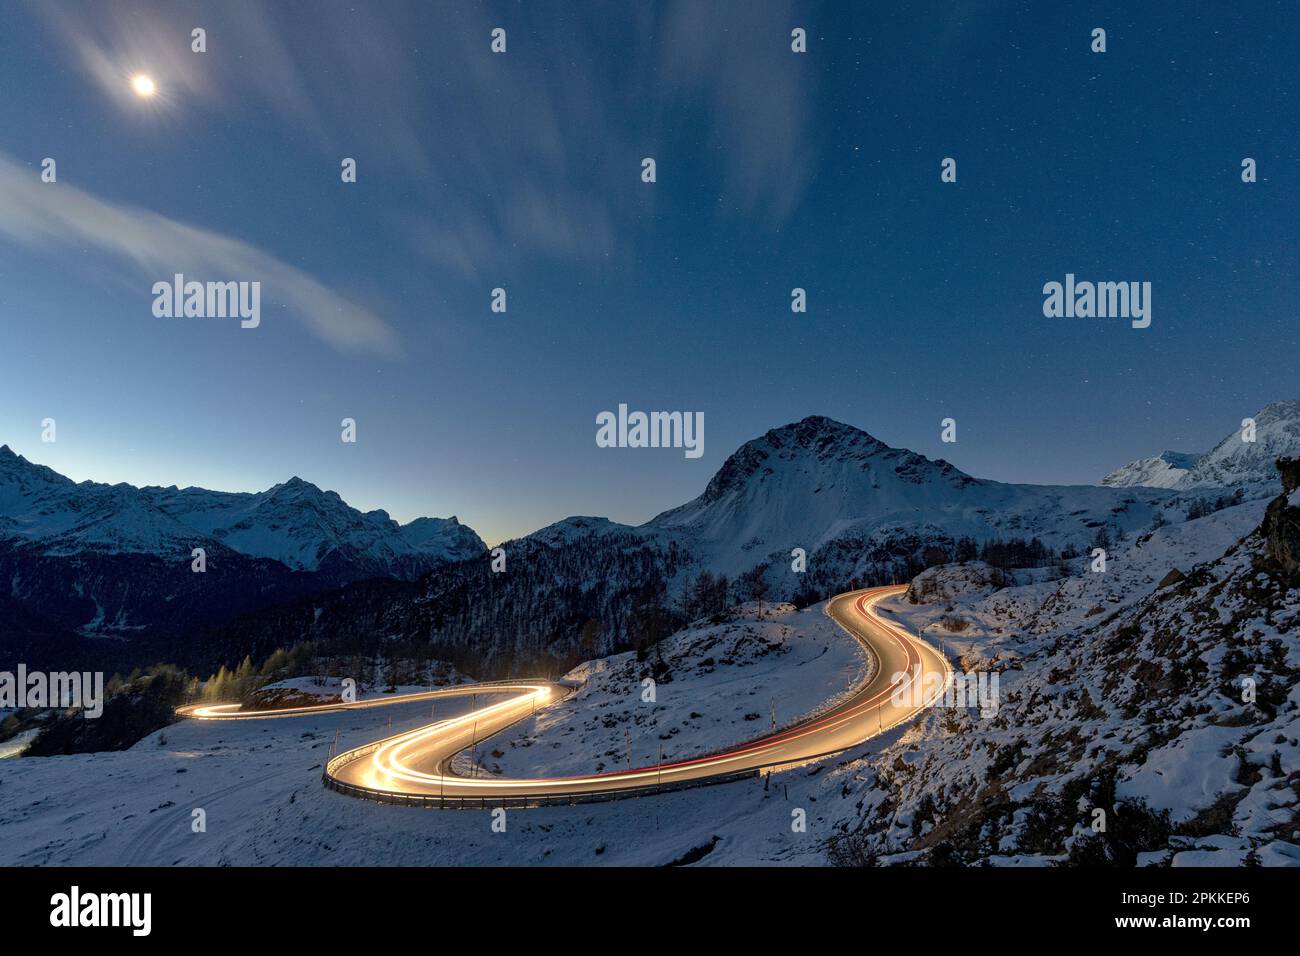 Lichter von Autostrecken auf kurvigen Straßen, die nachts mit Schnee bedeckt sind, Bernina Pass, Val Poschiavo, Kanton Graubunden, Schweiz, Europa Stockfoto